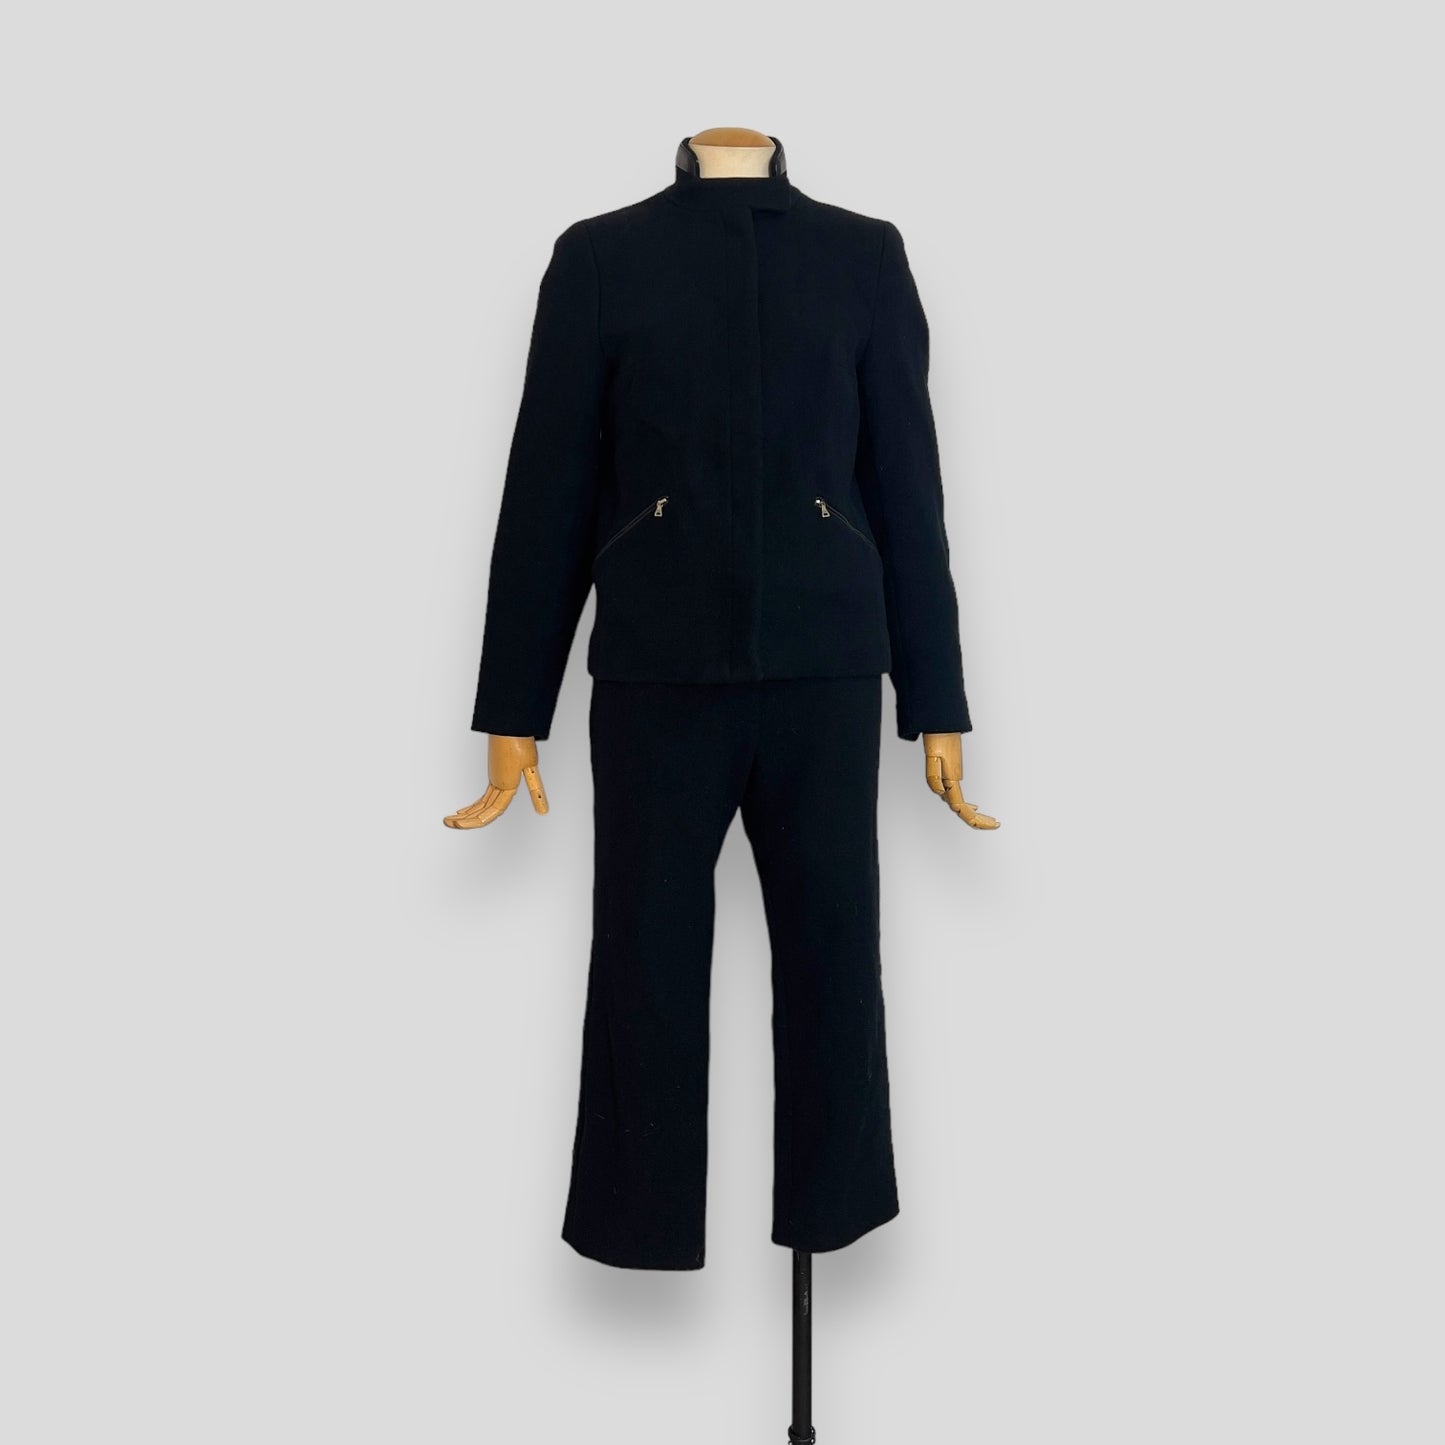 Prada 1999 F/W runway wool suit